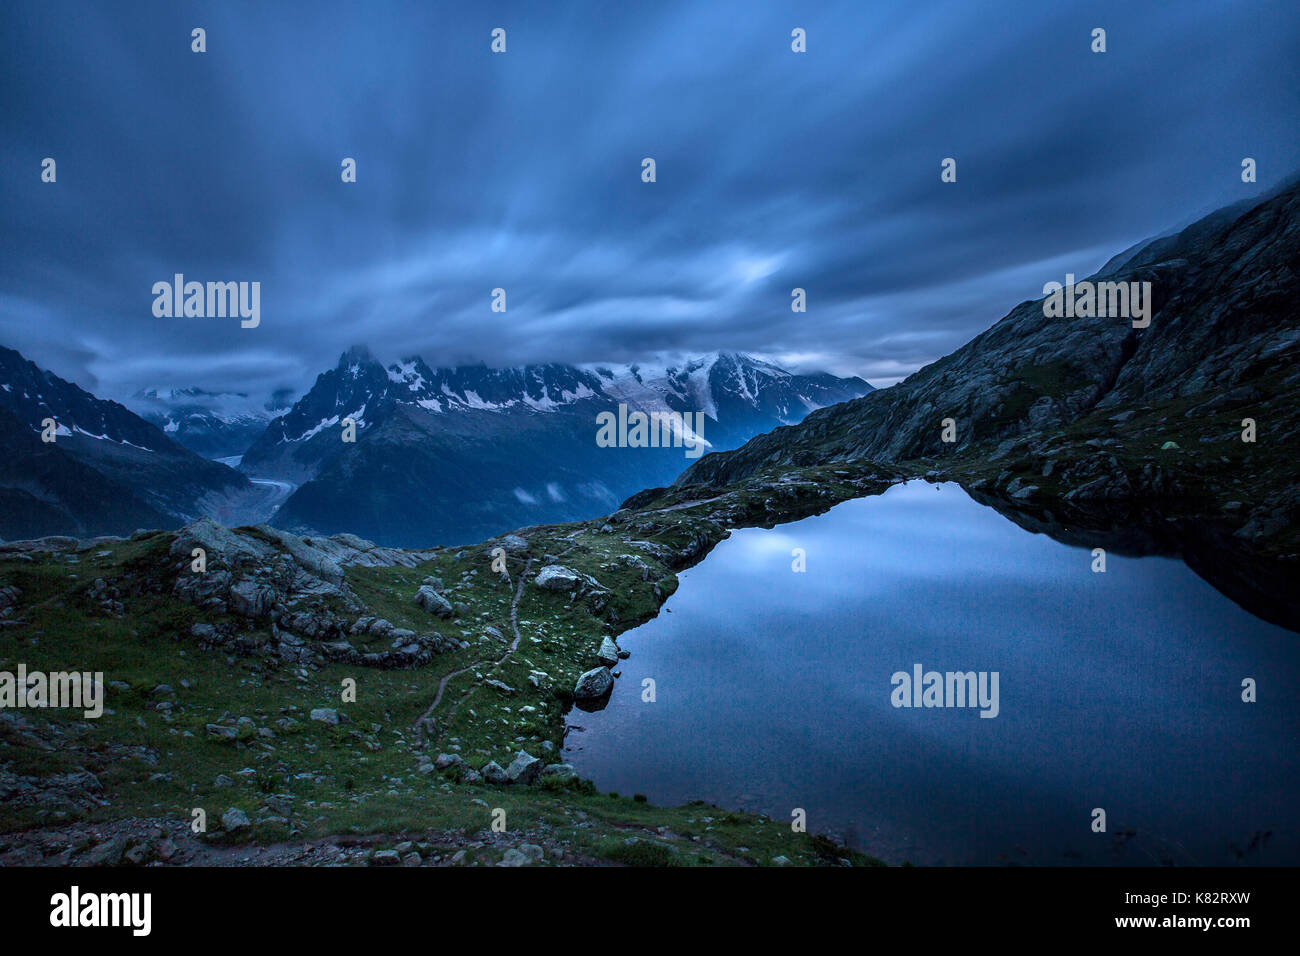 Der Himmel ist blau wie das Wasser des Lac de cheserys Chamonix Haute Savoie Frankreich Europa getönt Stockfoto